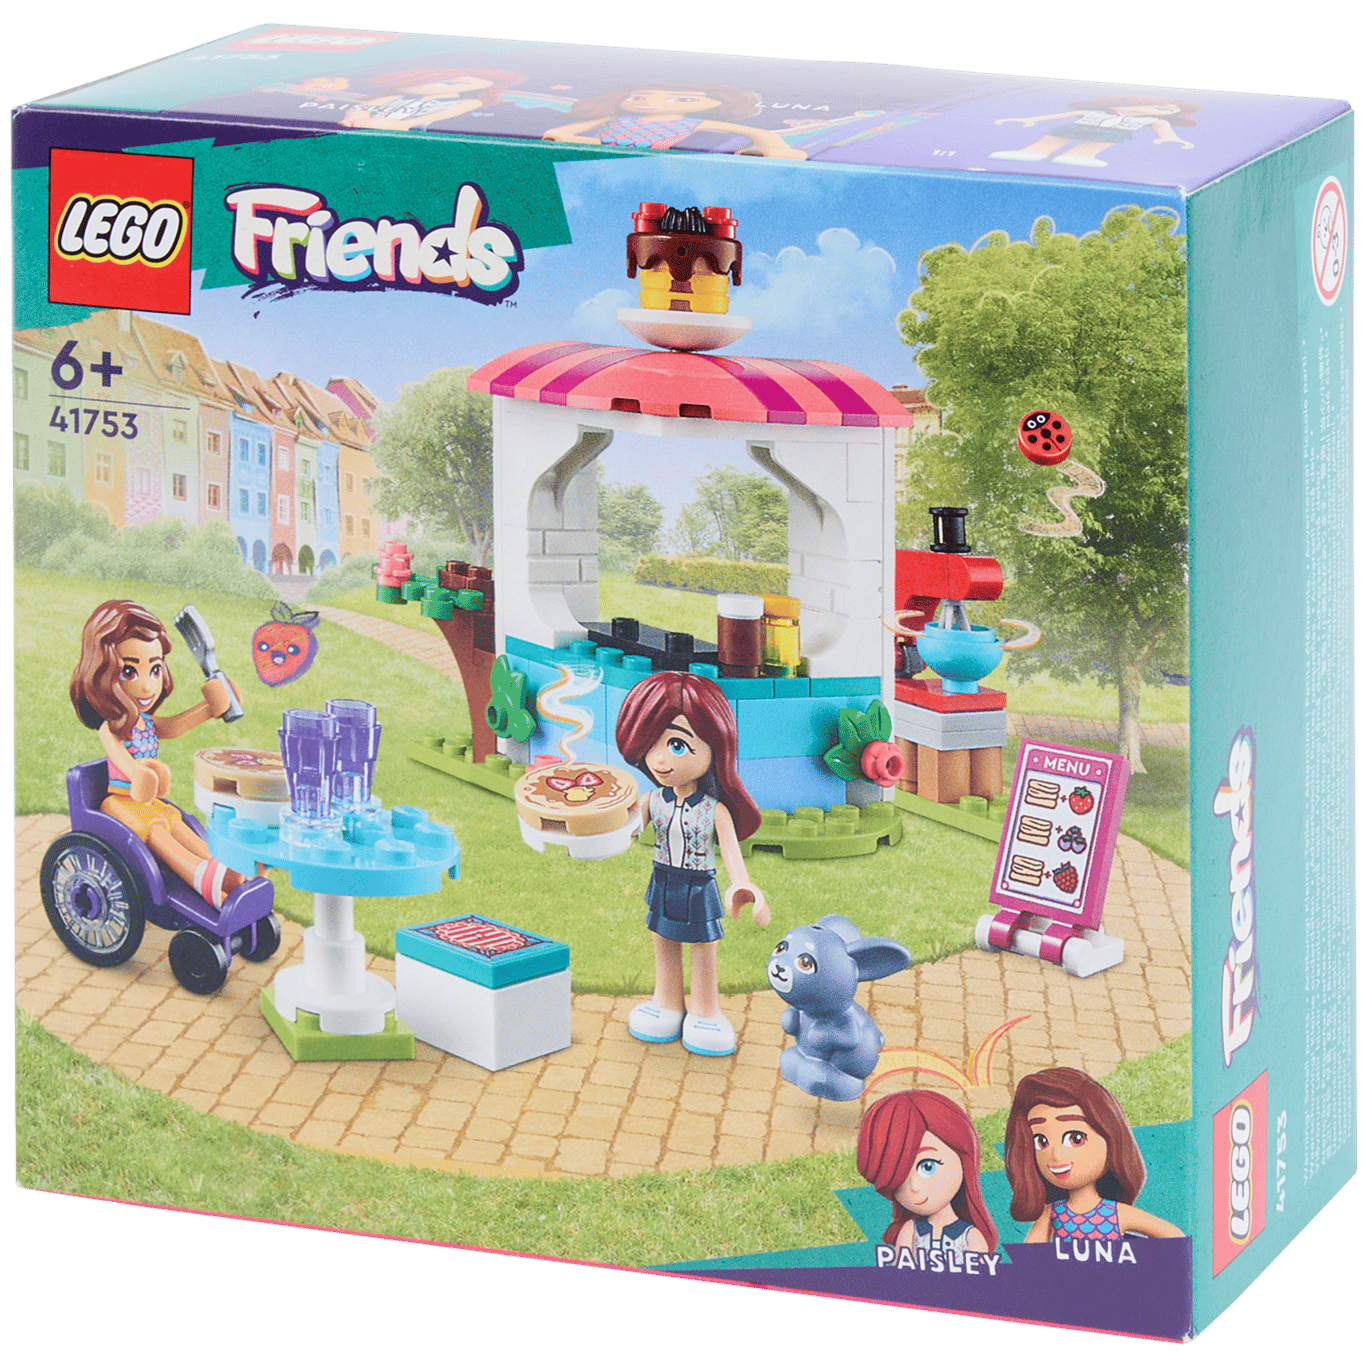 Puesto de tortitas LEGO Friends